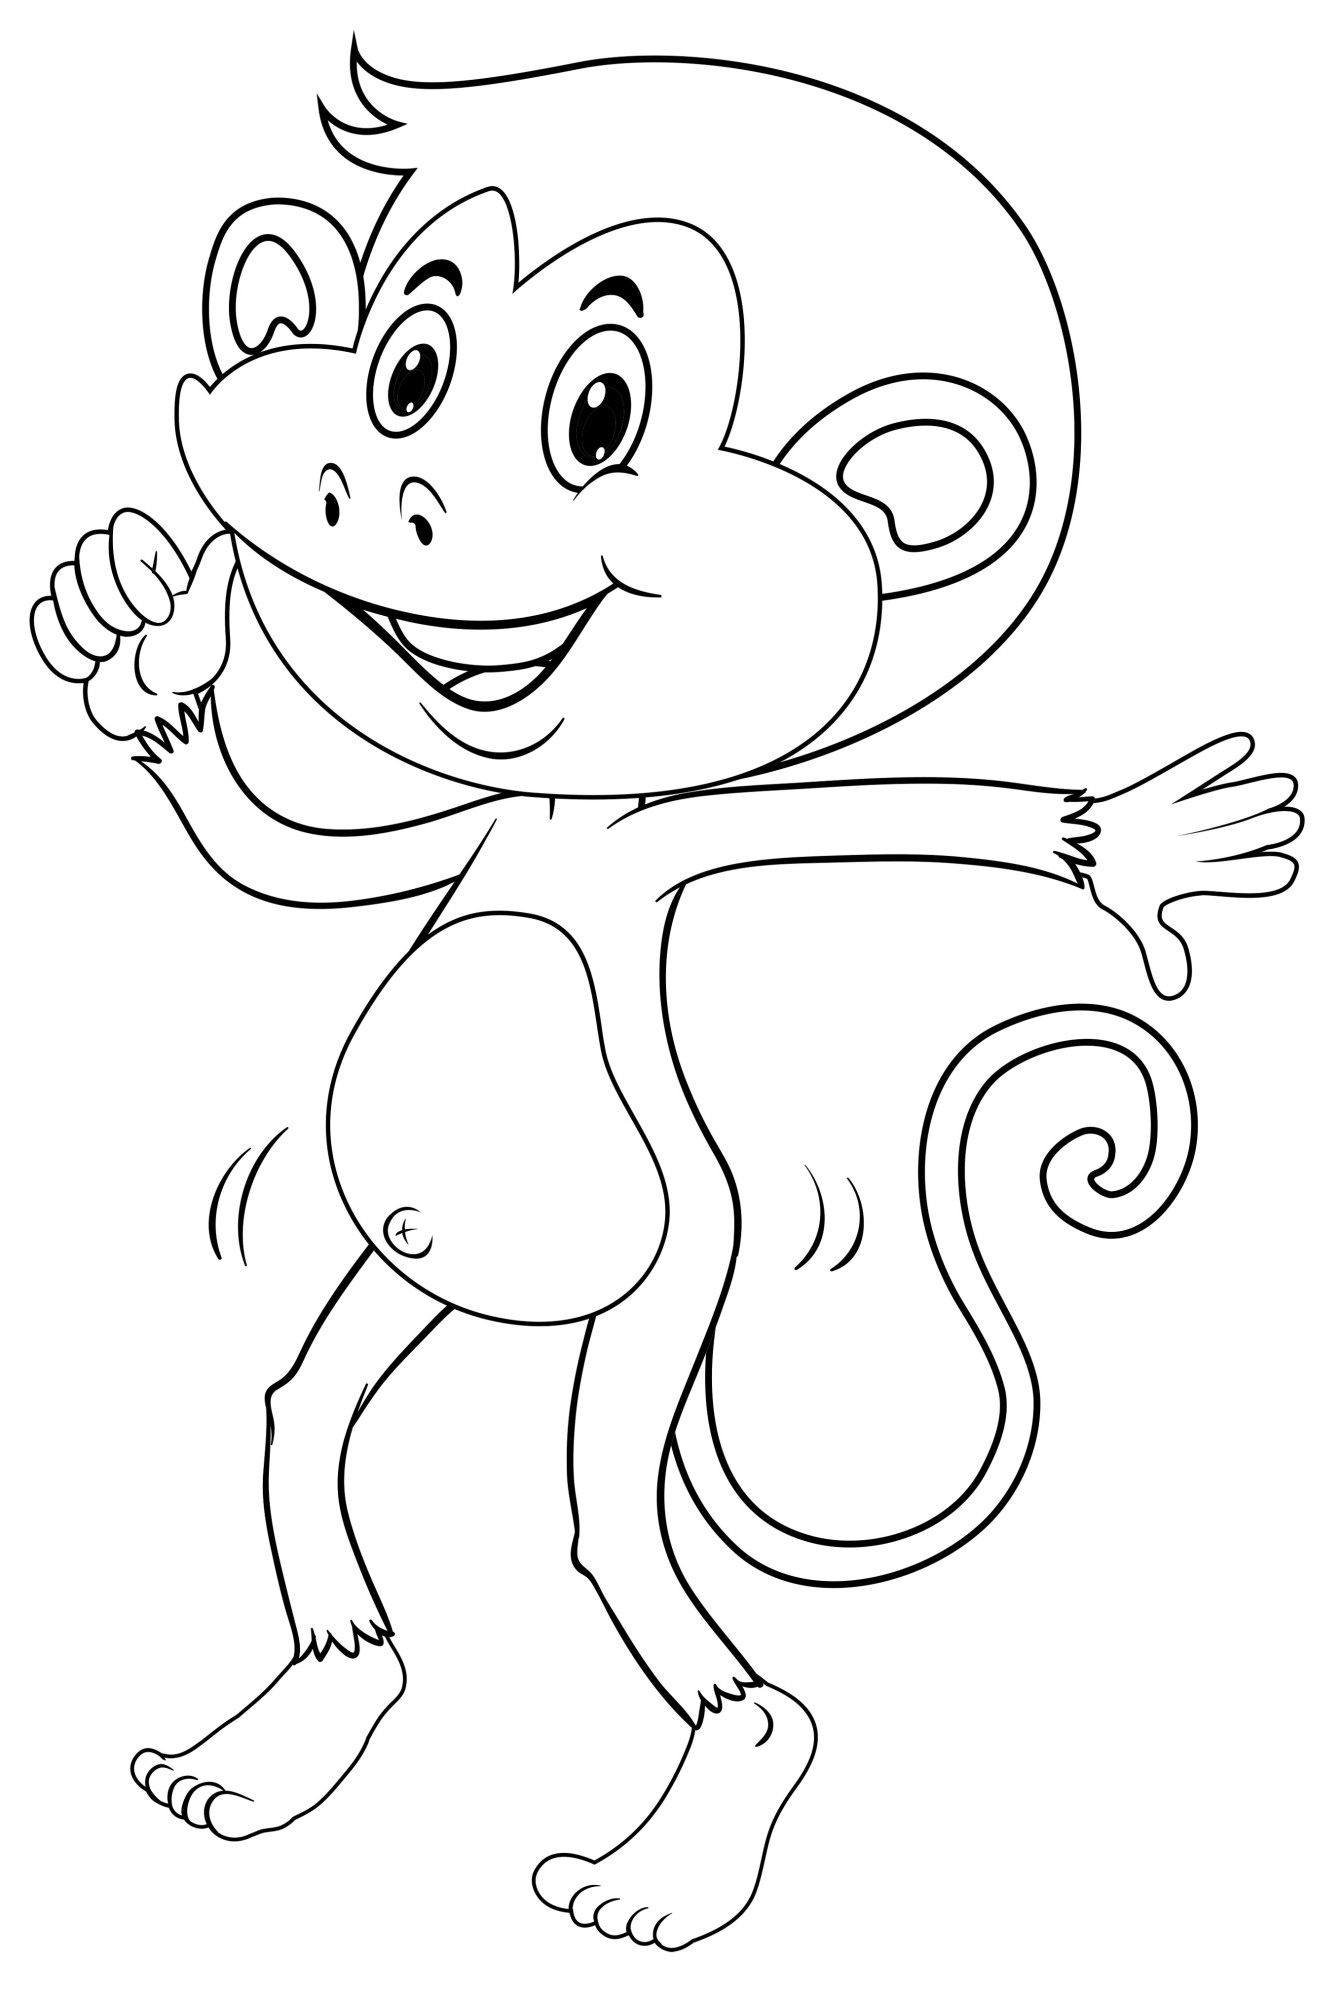 Раскраска для детей: веселый танец обезьяны